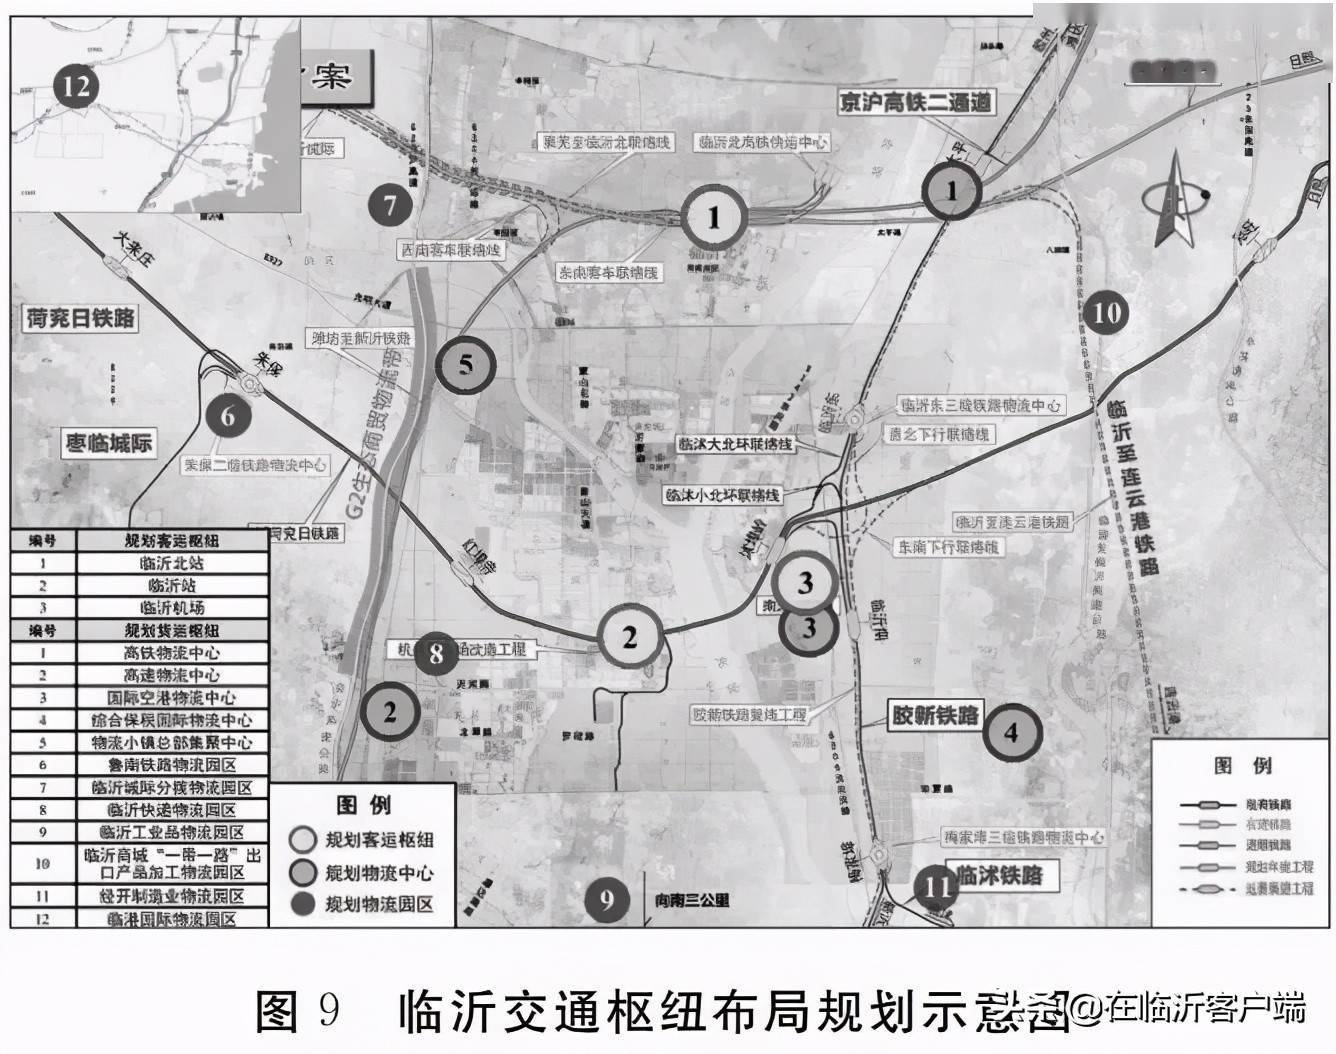 淄博,济宁,烟台,威海,菏泽,  临沂等市城市轨道交通规划建设,到2025年